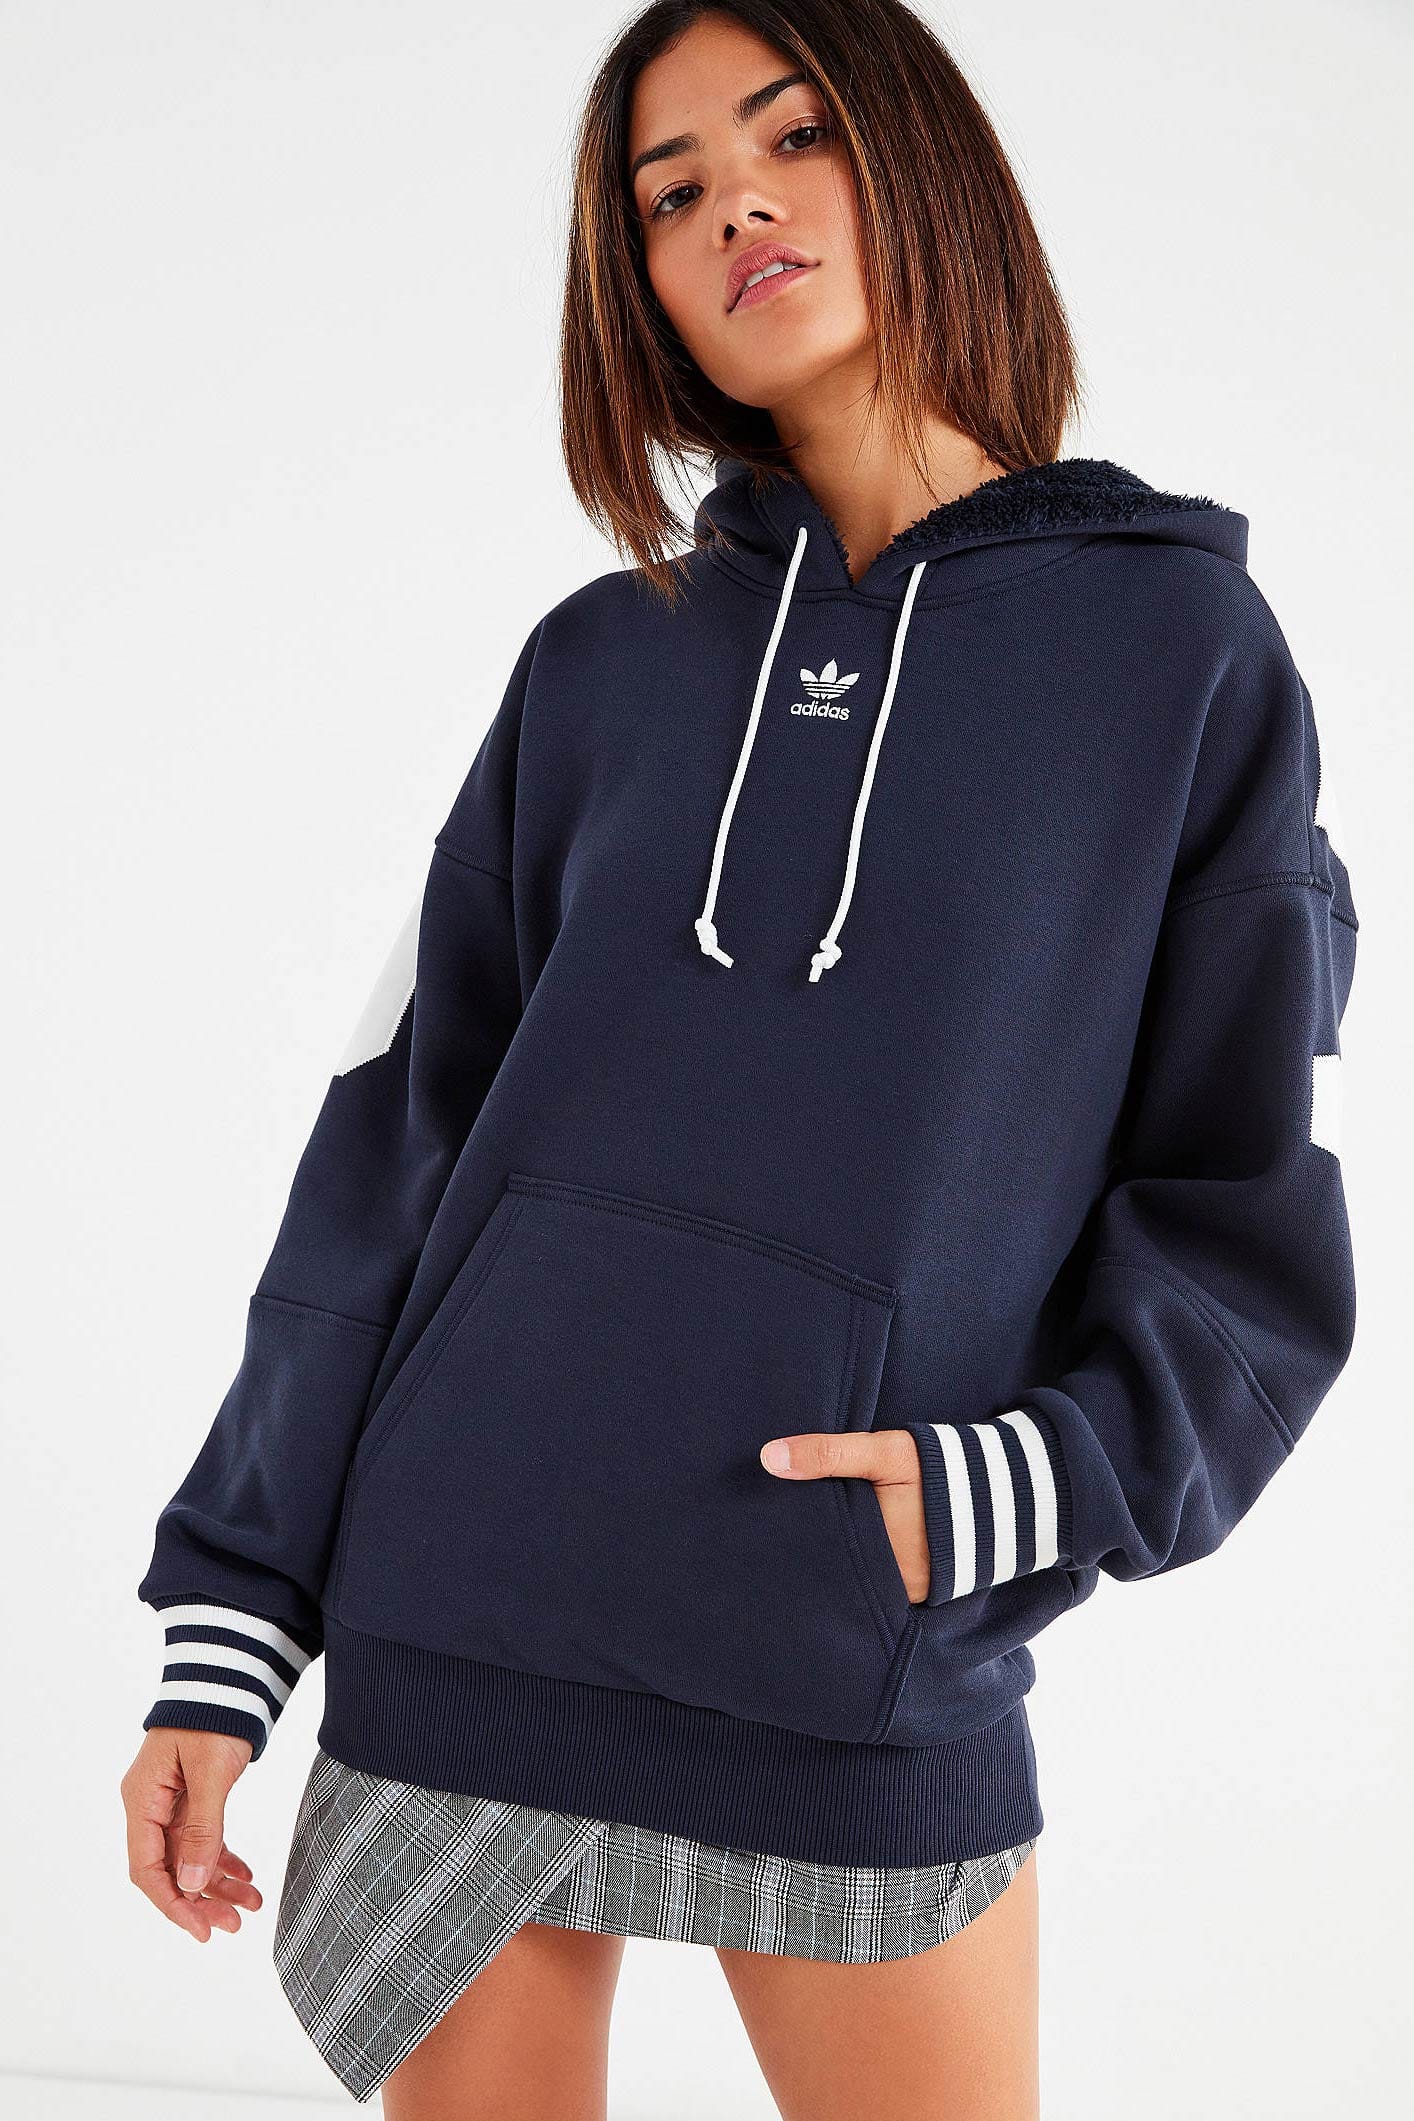 navy adidas hoodie